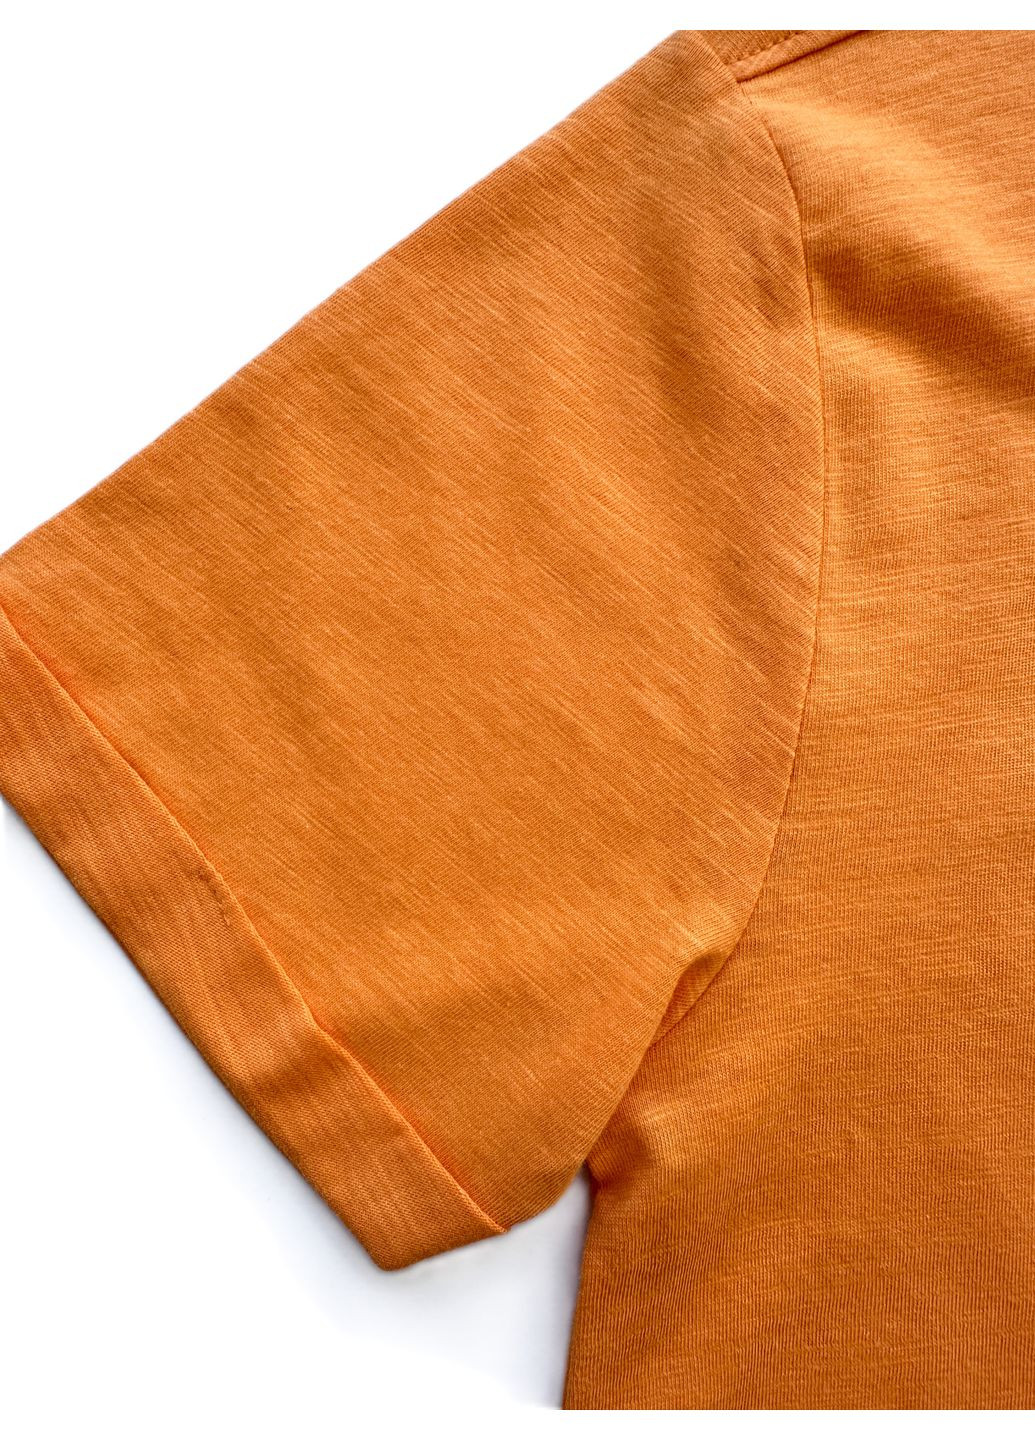 Помаранчева літня футболка для хлопця оранжева з кишенькою 2000-60 (146 см) OVS